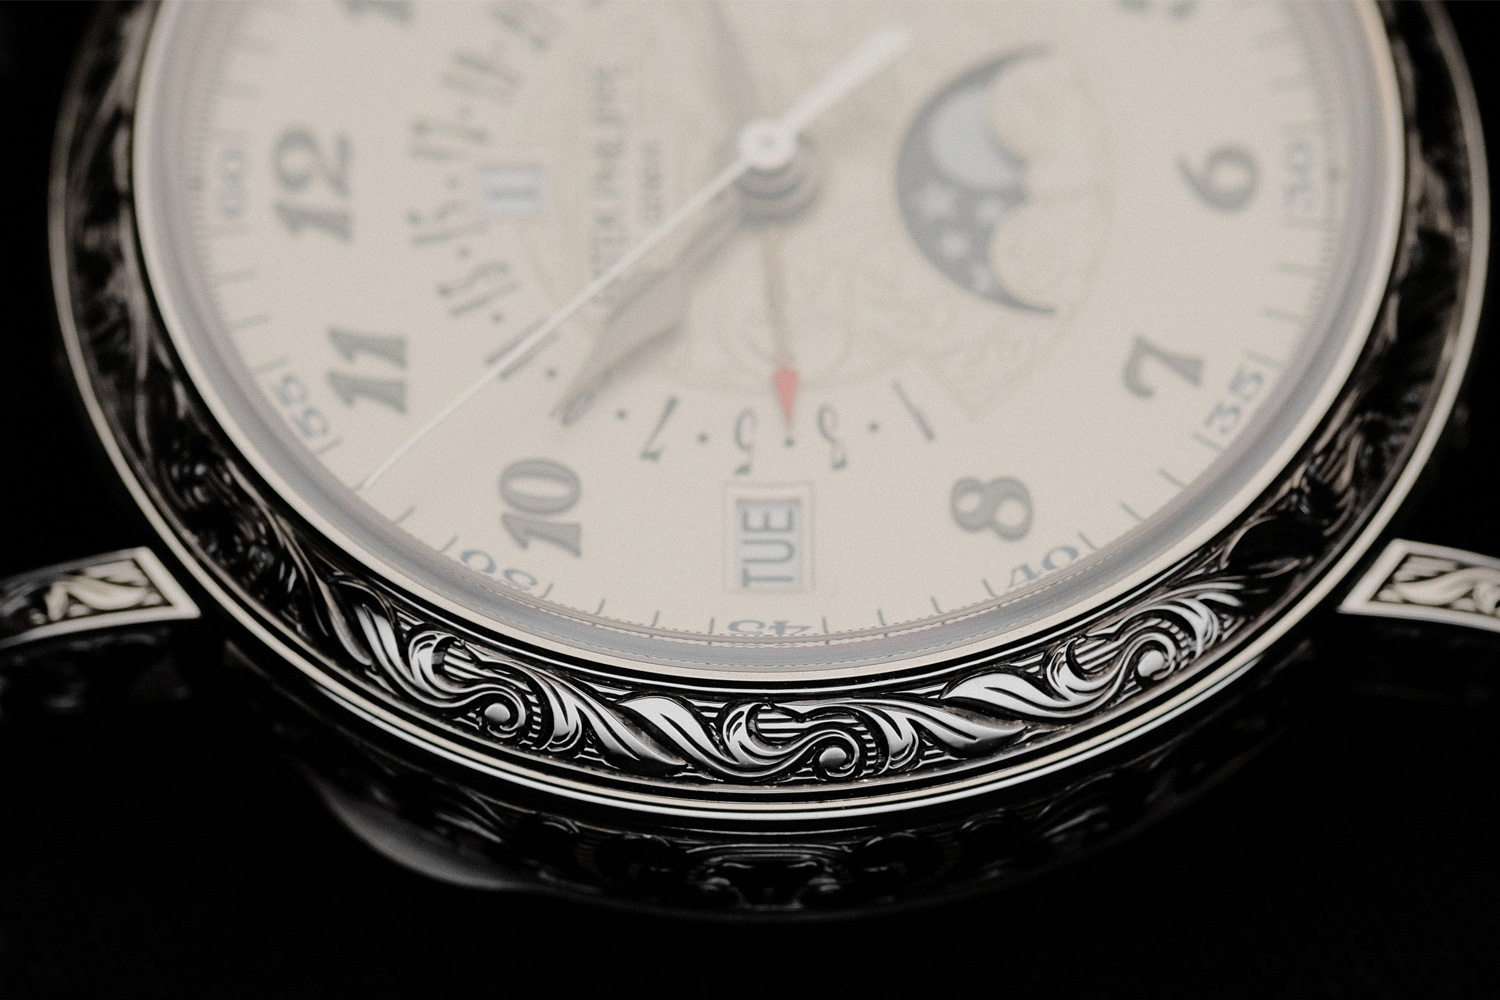 パテック フィリップが販売しているトゥールビヨンの技術が使われた腕時計